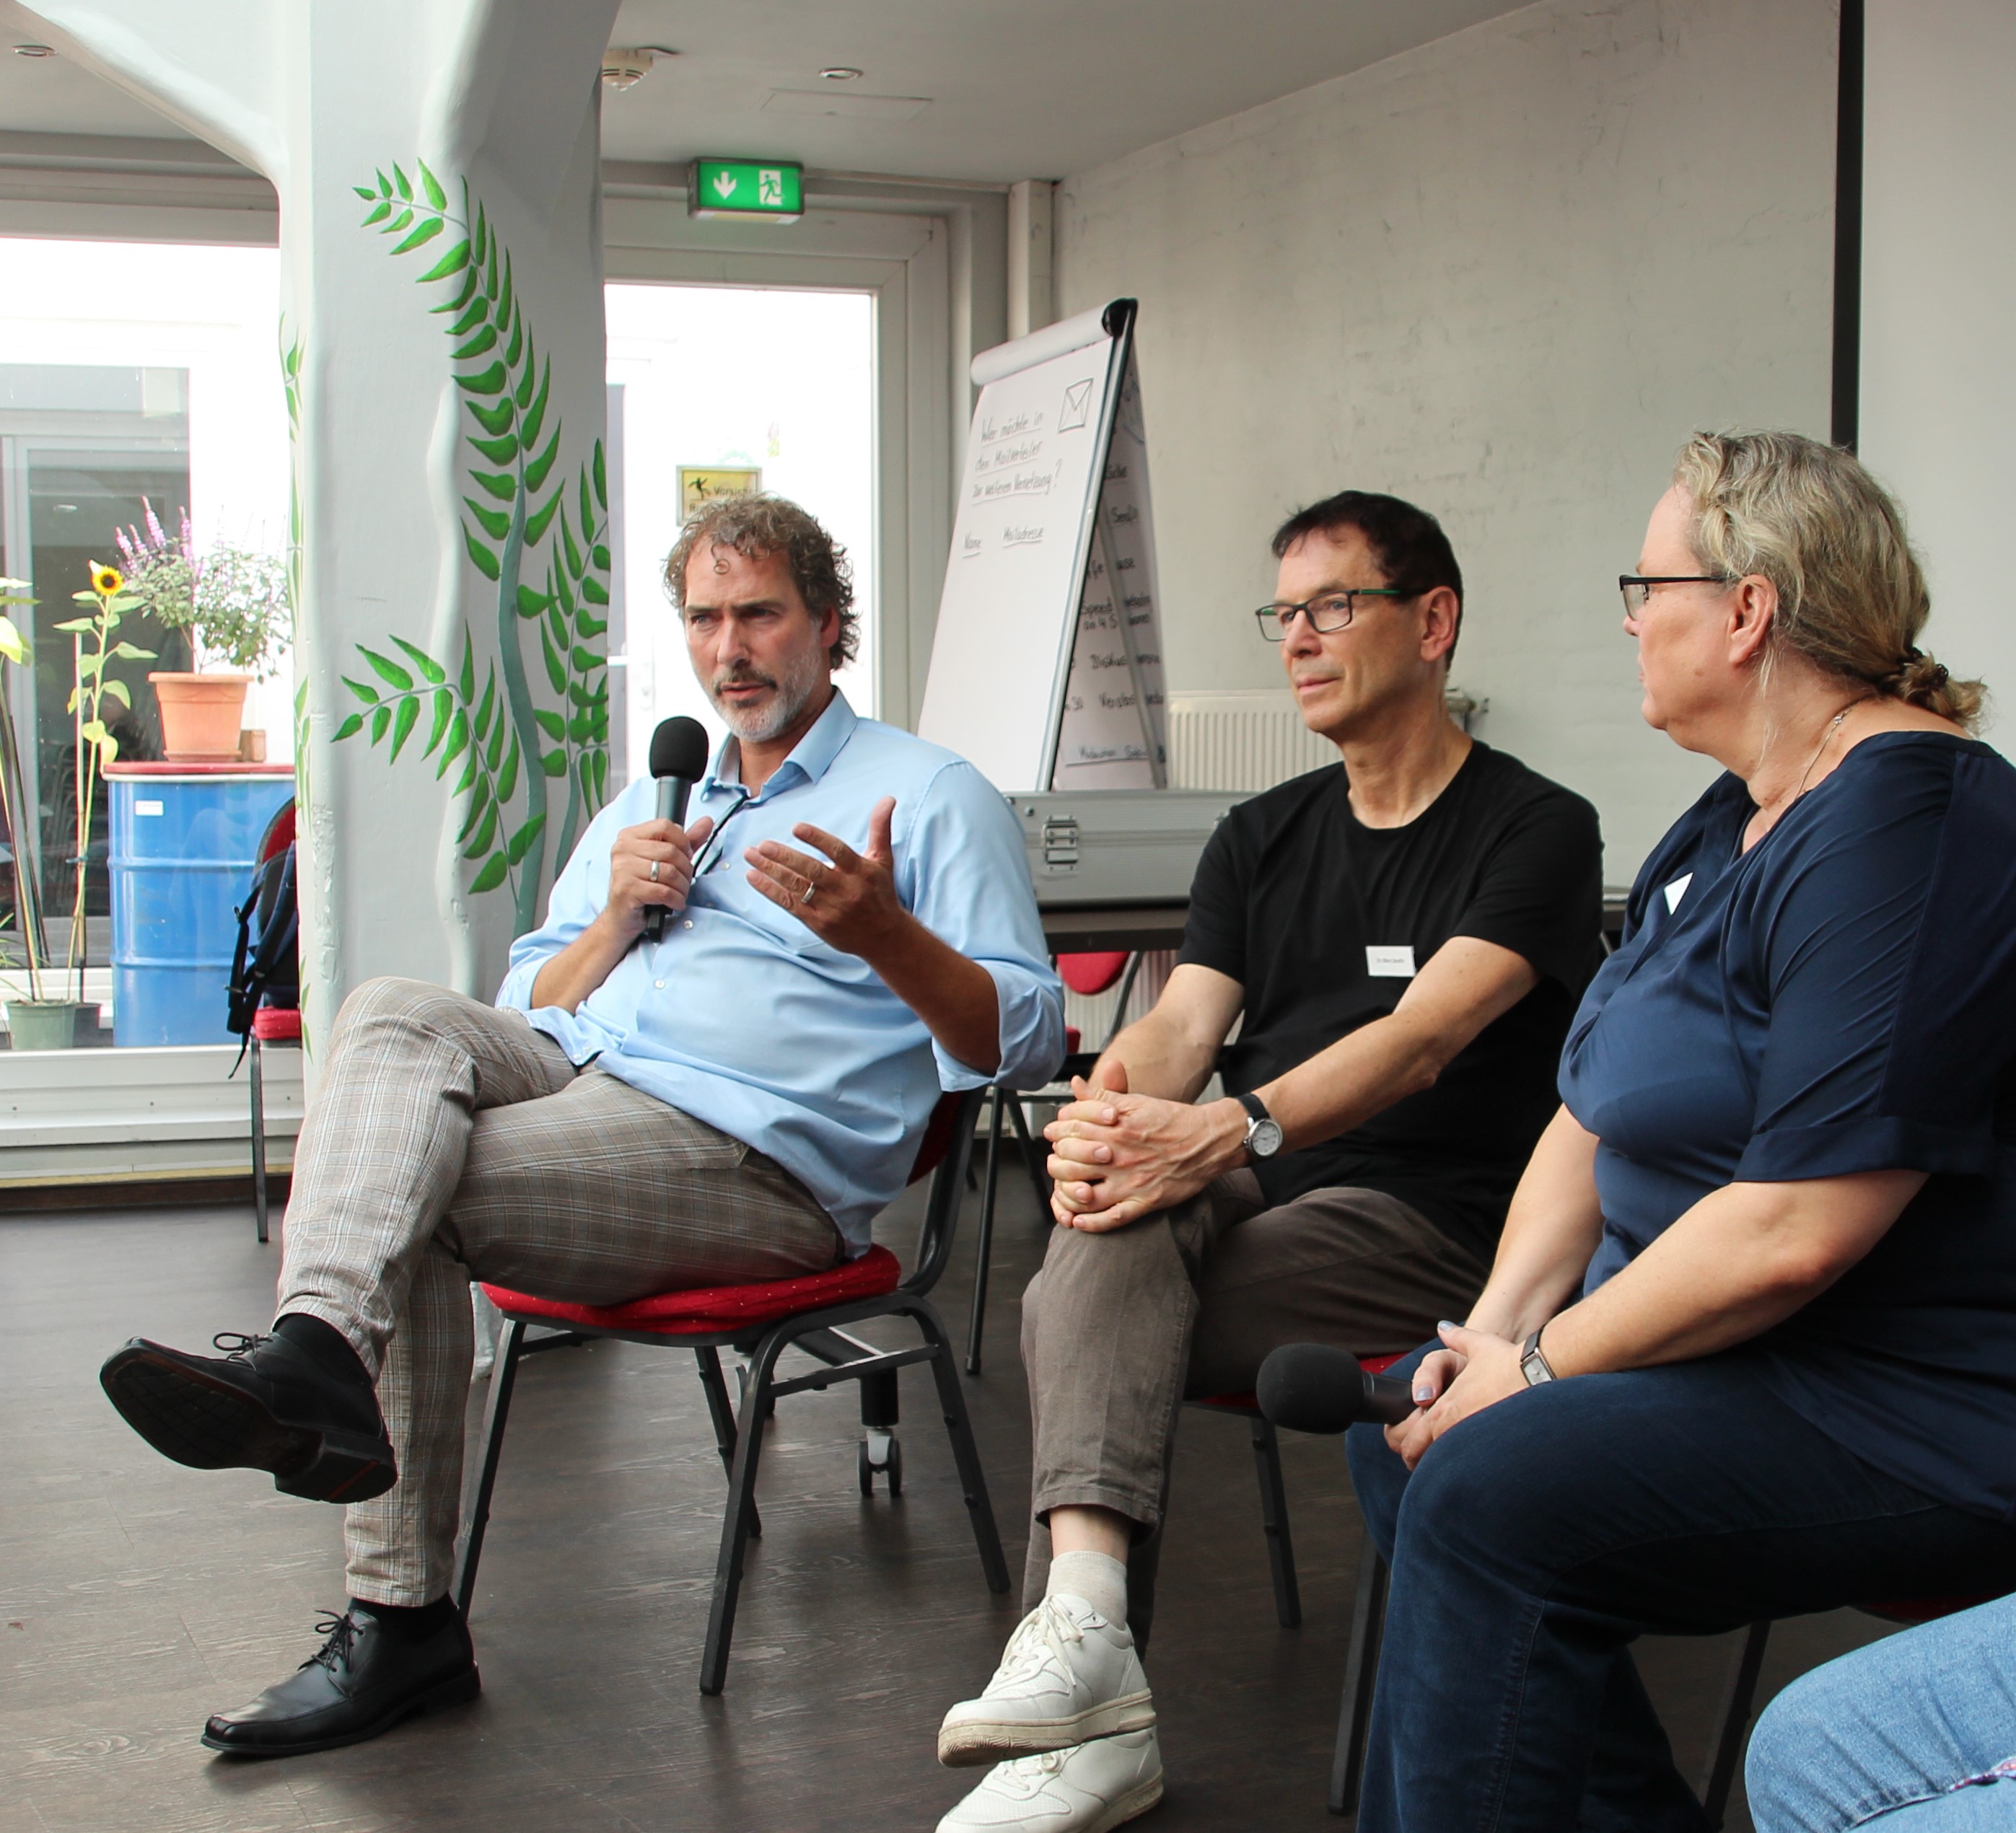 Diskussion mit (von links) Dr. Rücker, Dr. Serafin und Moderatorin Sabine Brauer